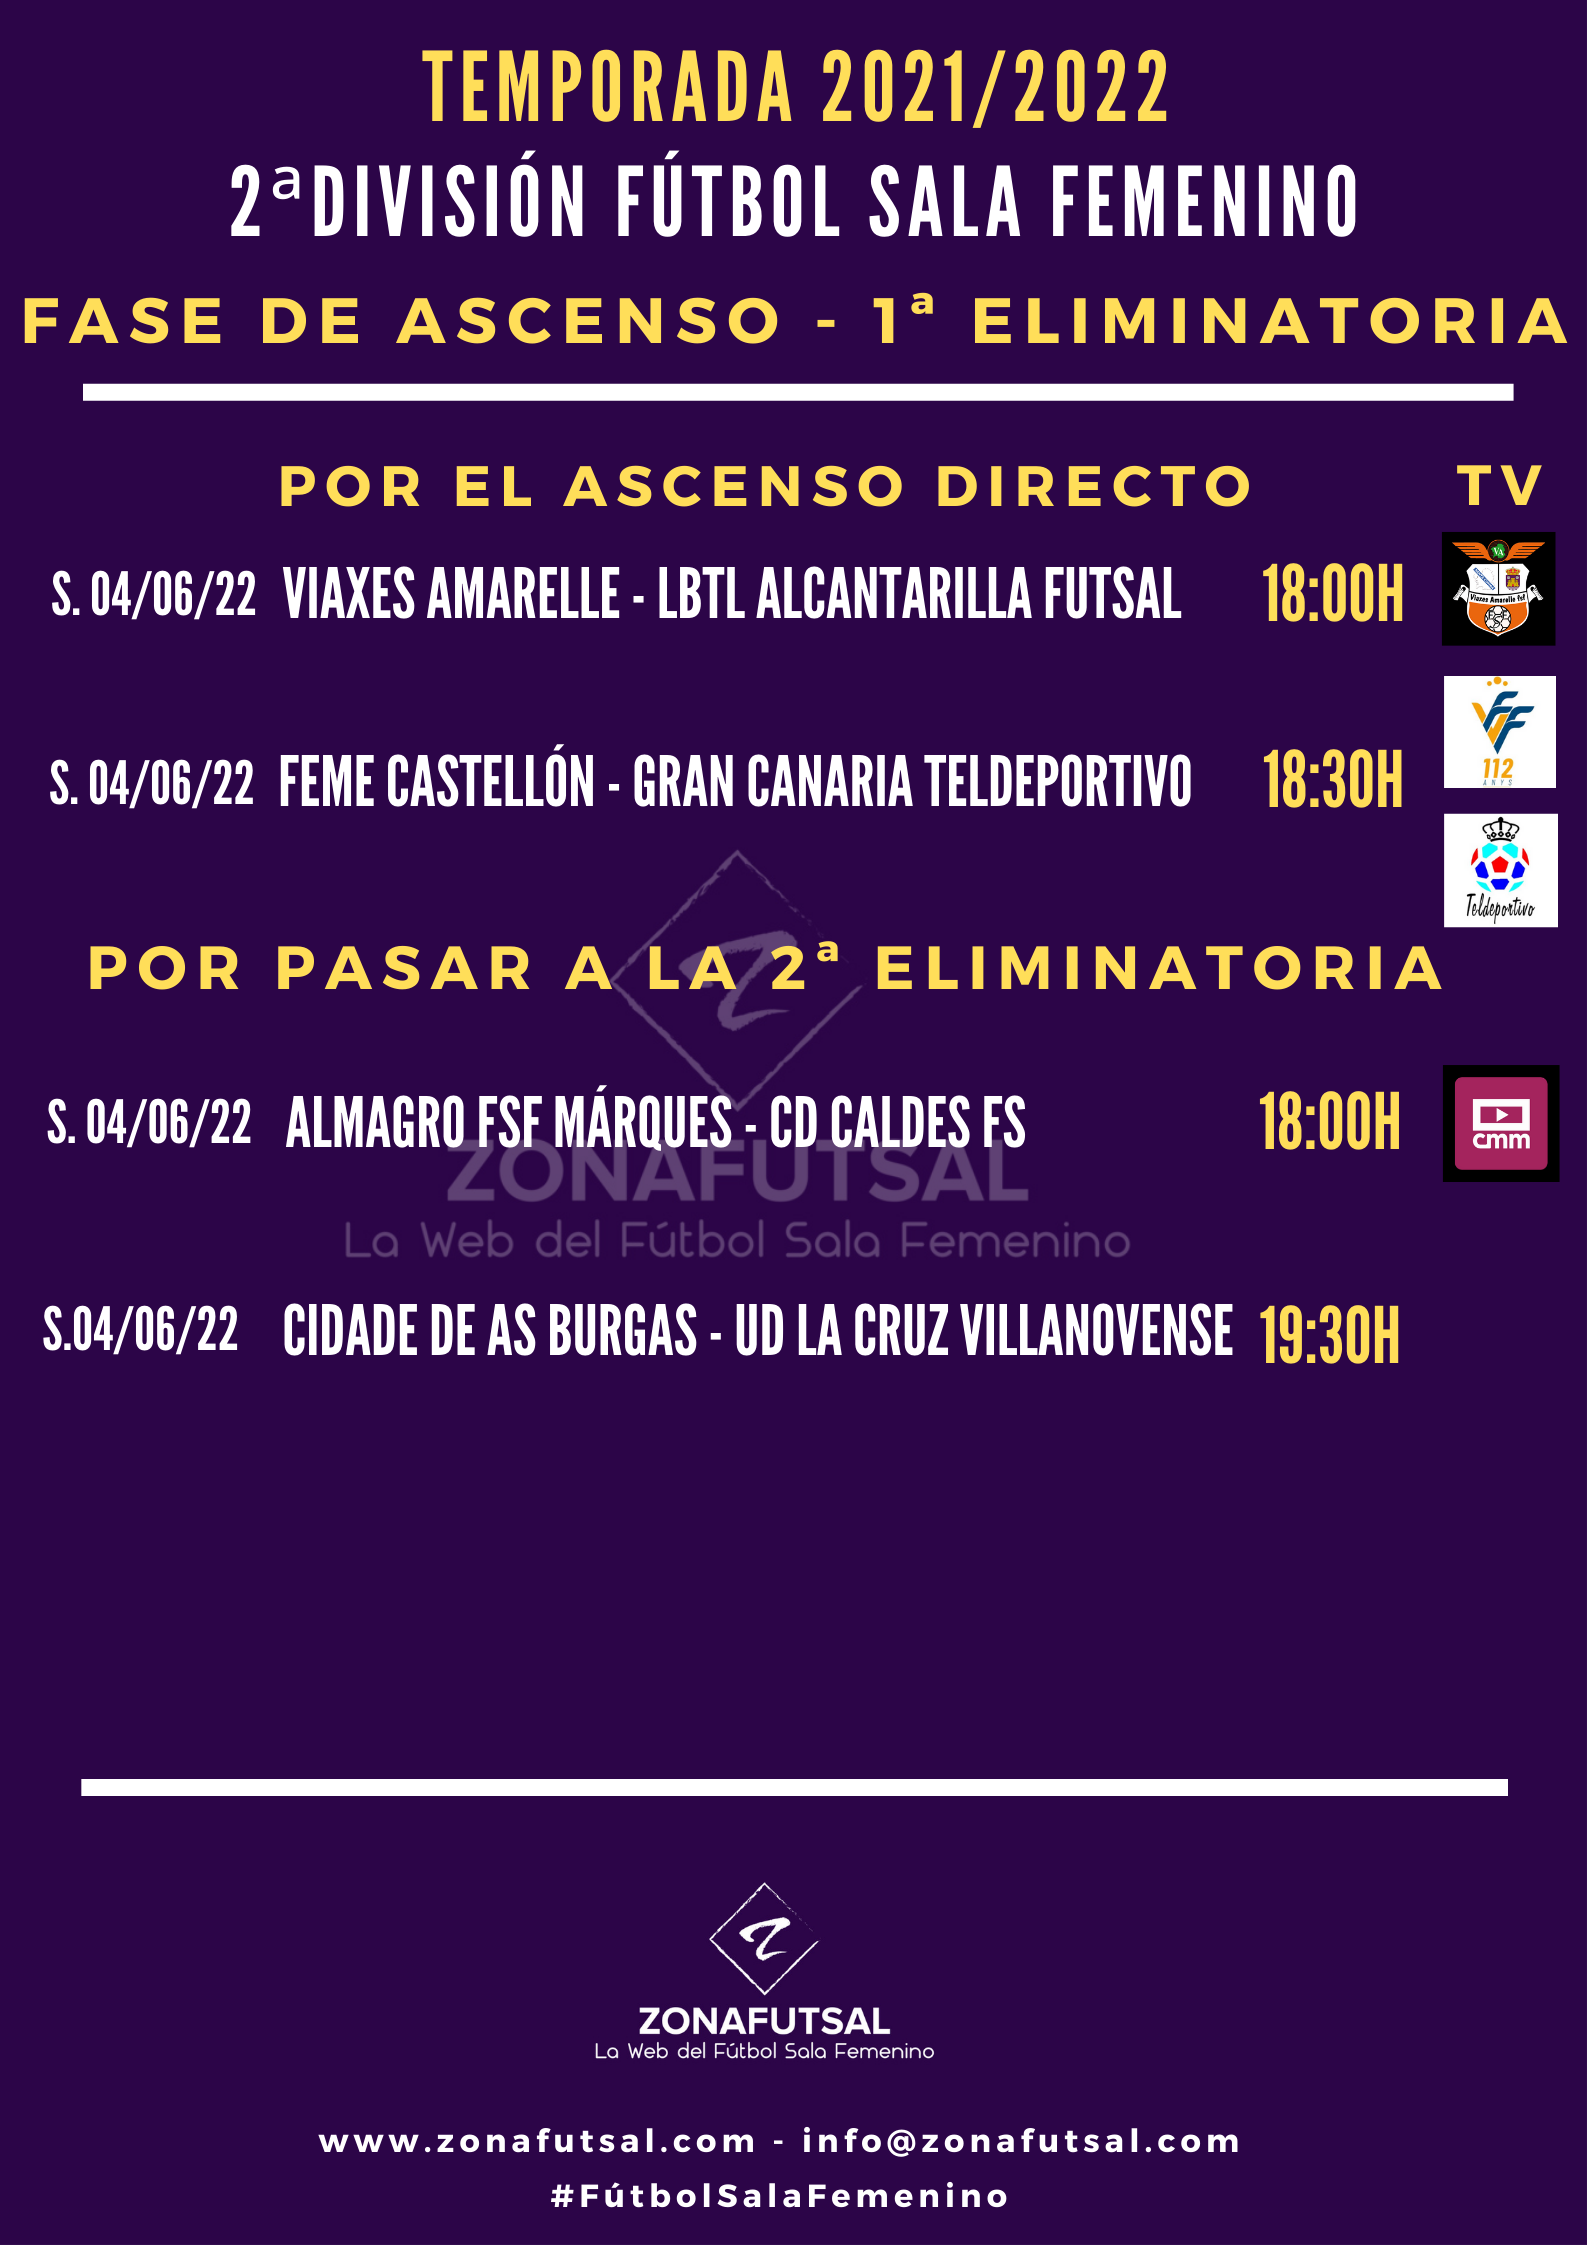 Horarios y Emisiones de la 1ª Eliminatoria Play Off Ascenso a 1ª División Fútbol Sala Femenino.